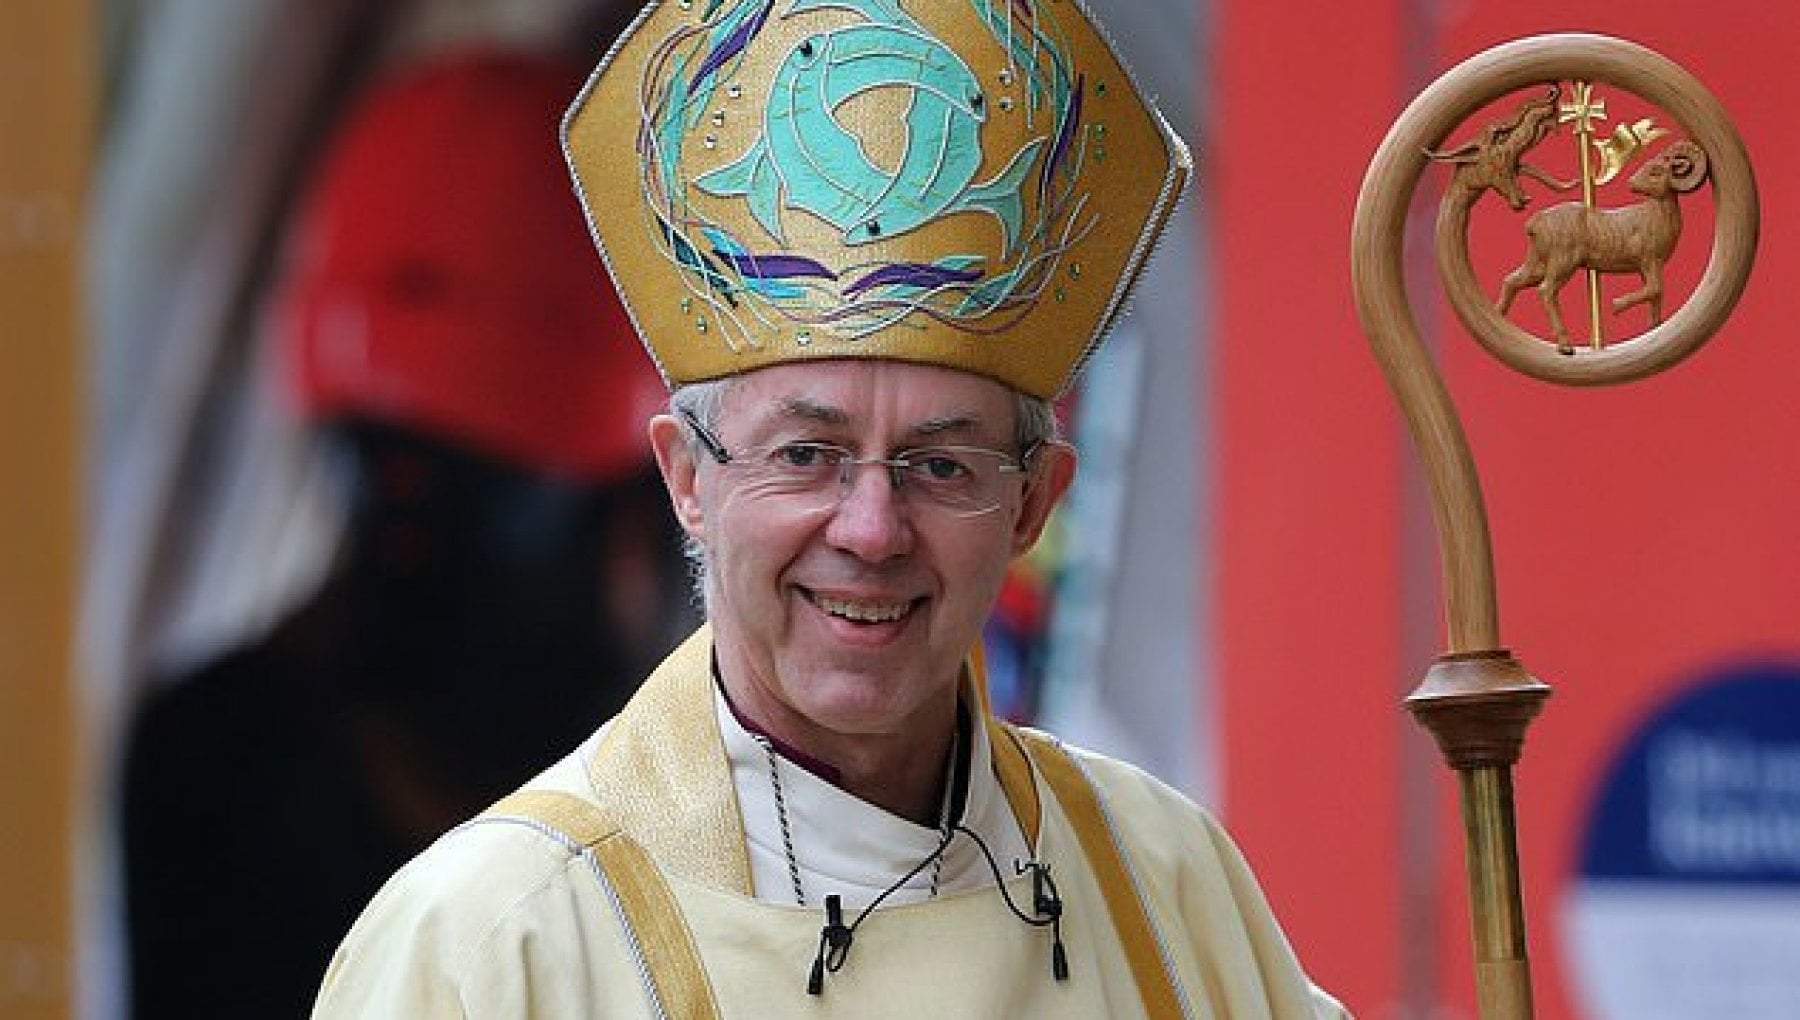 Natale, l'arcivescovo di Canterbury parla dei bambini che soffrono in Palestina e di quelli uccisi o rapiti da Hamas